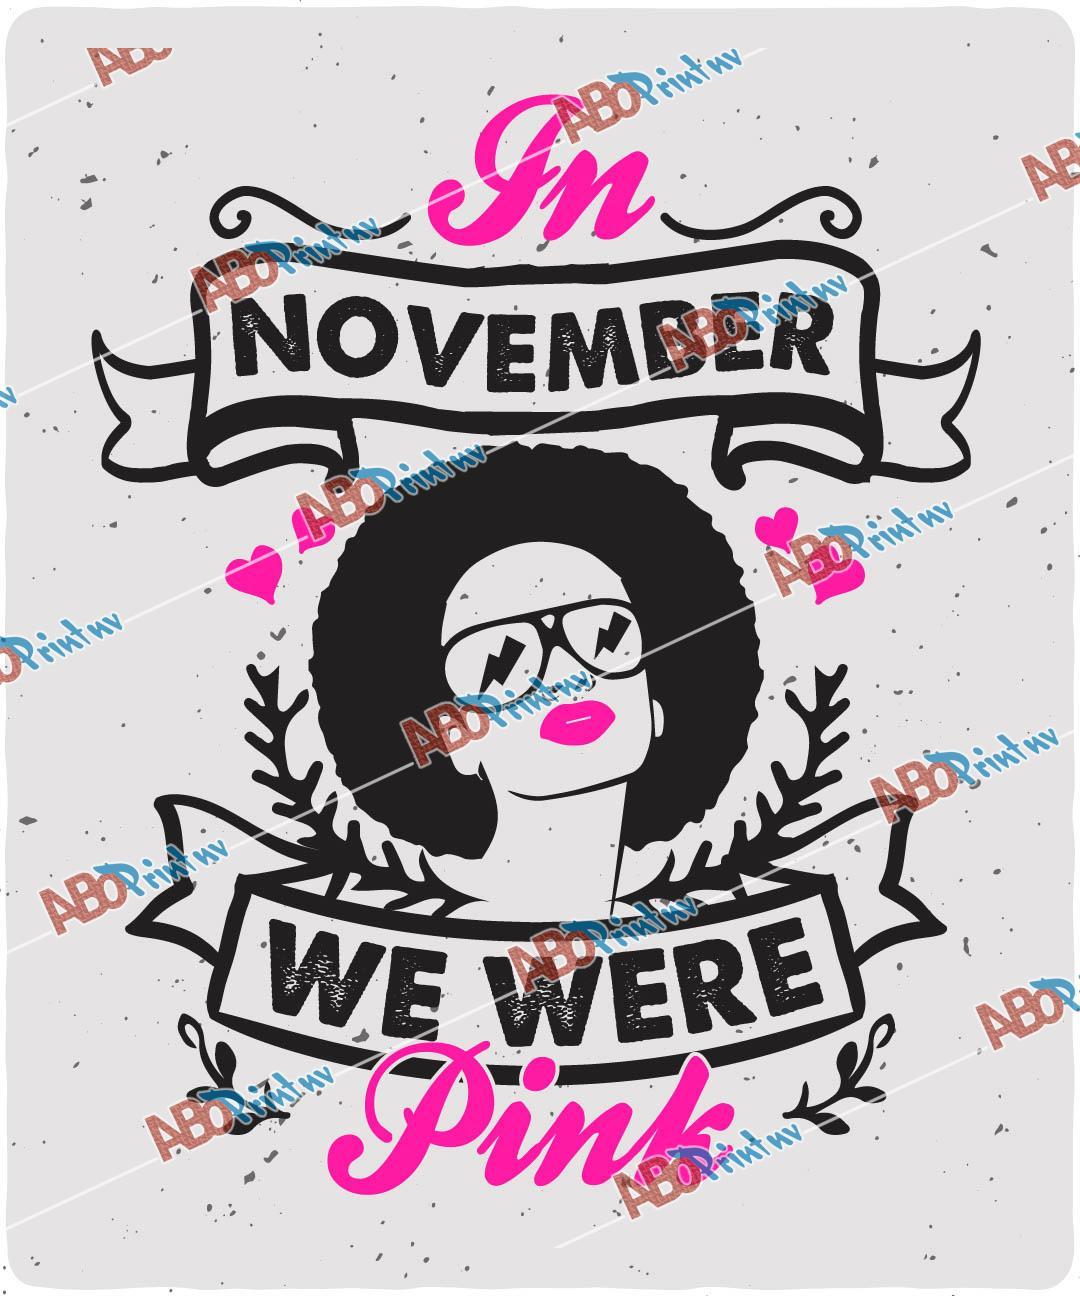 In November we were pink.jpg